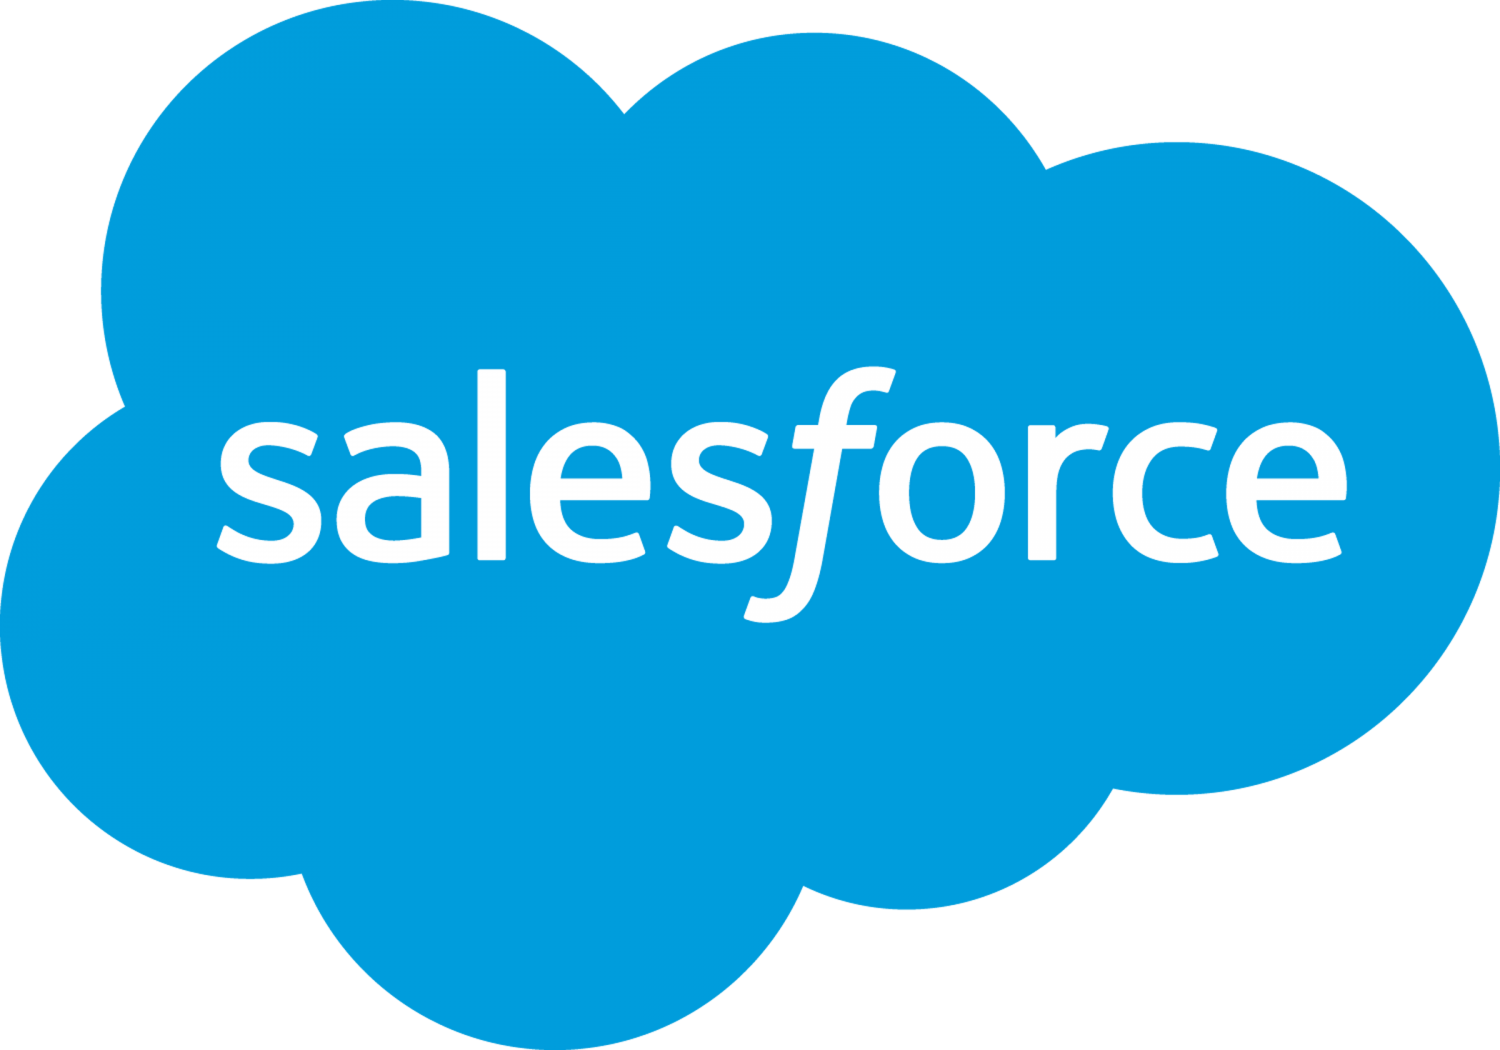 salesforce - una delle più grandi aziende tecnologiche di Austin